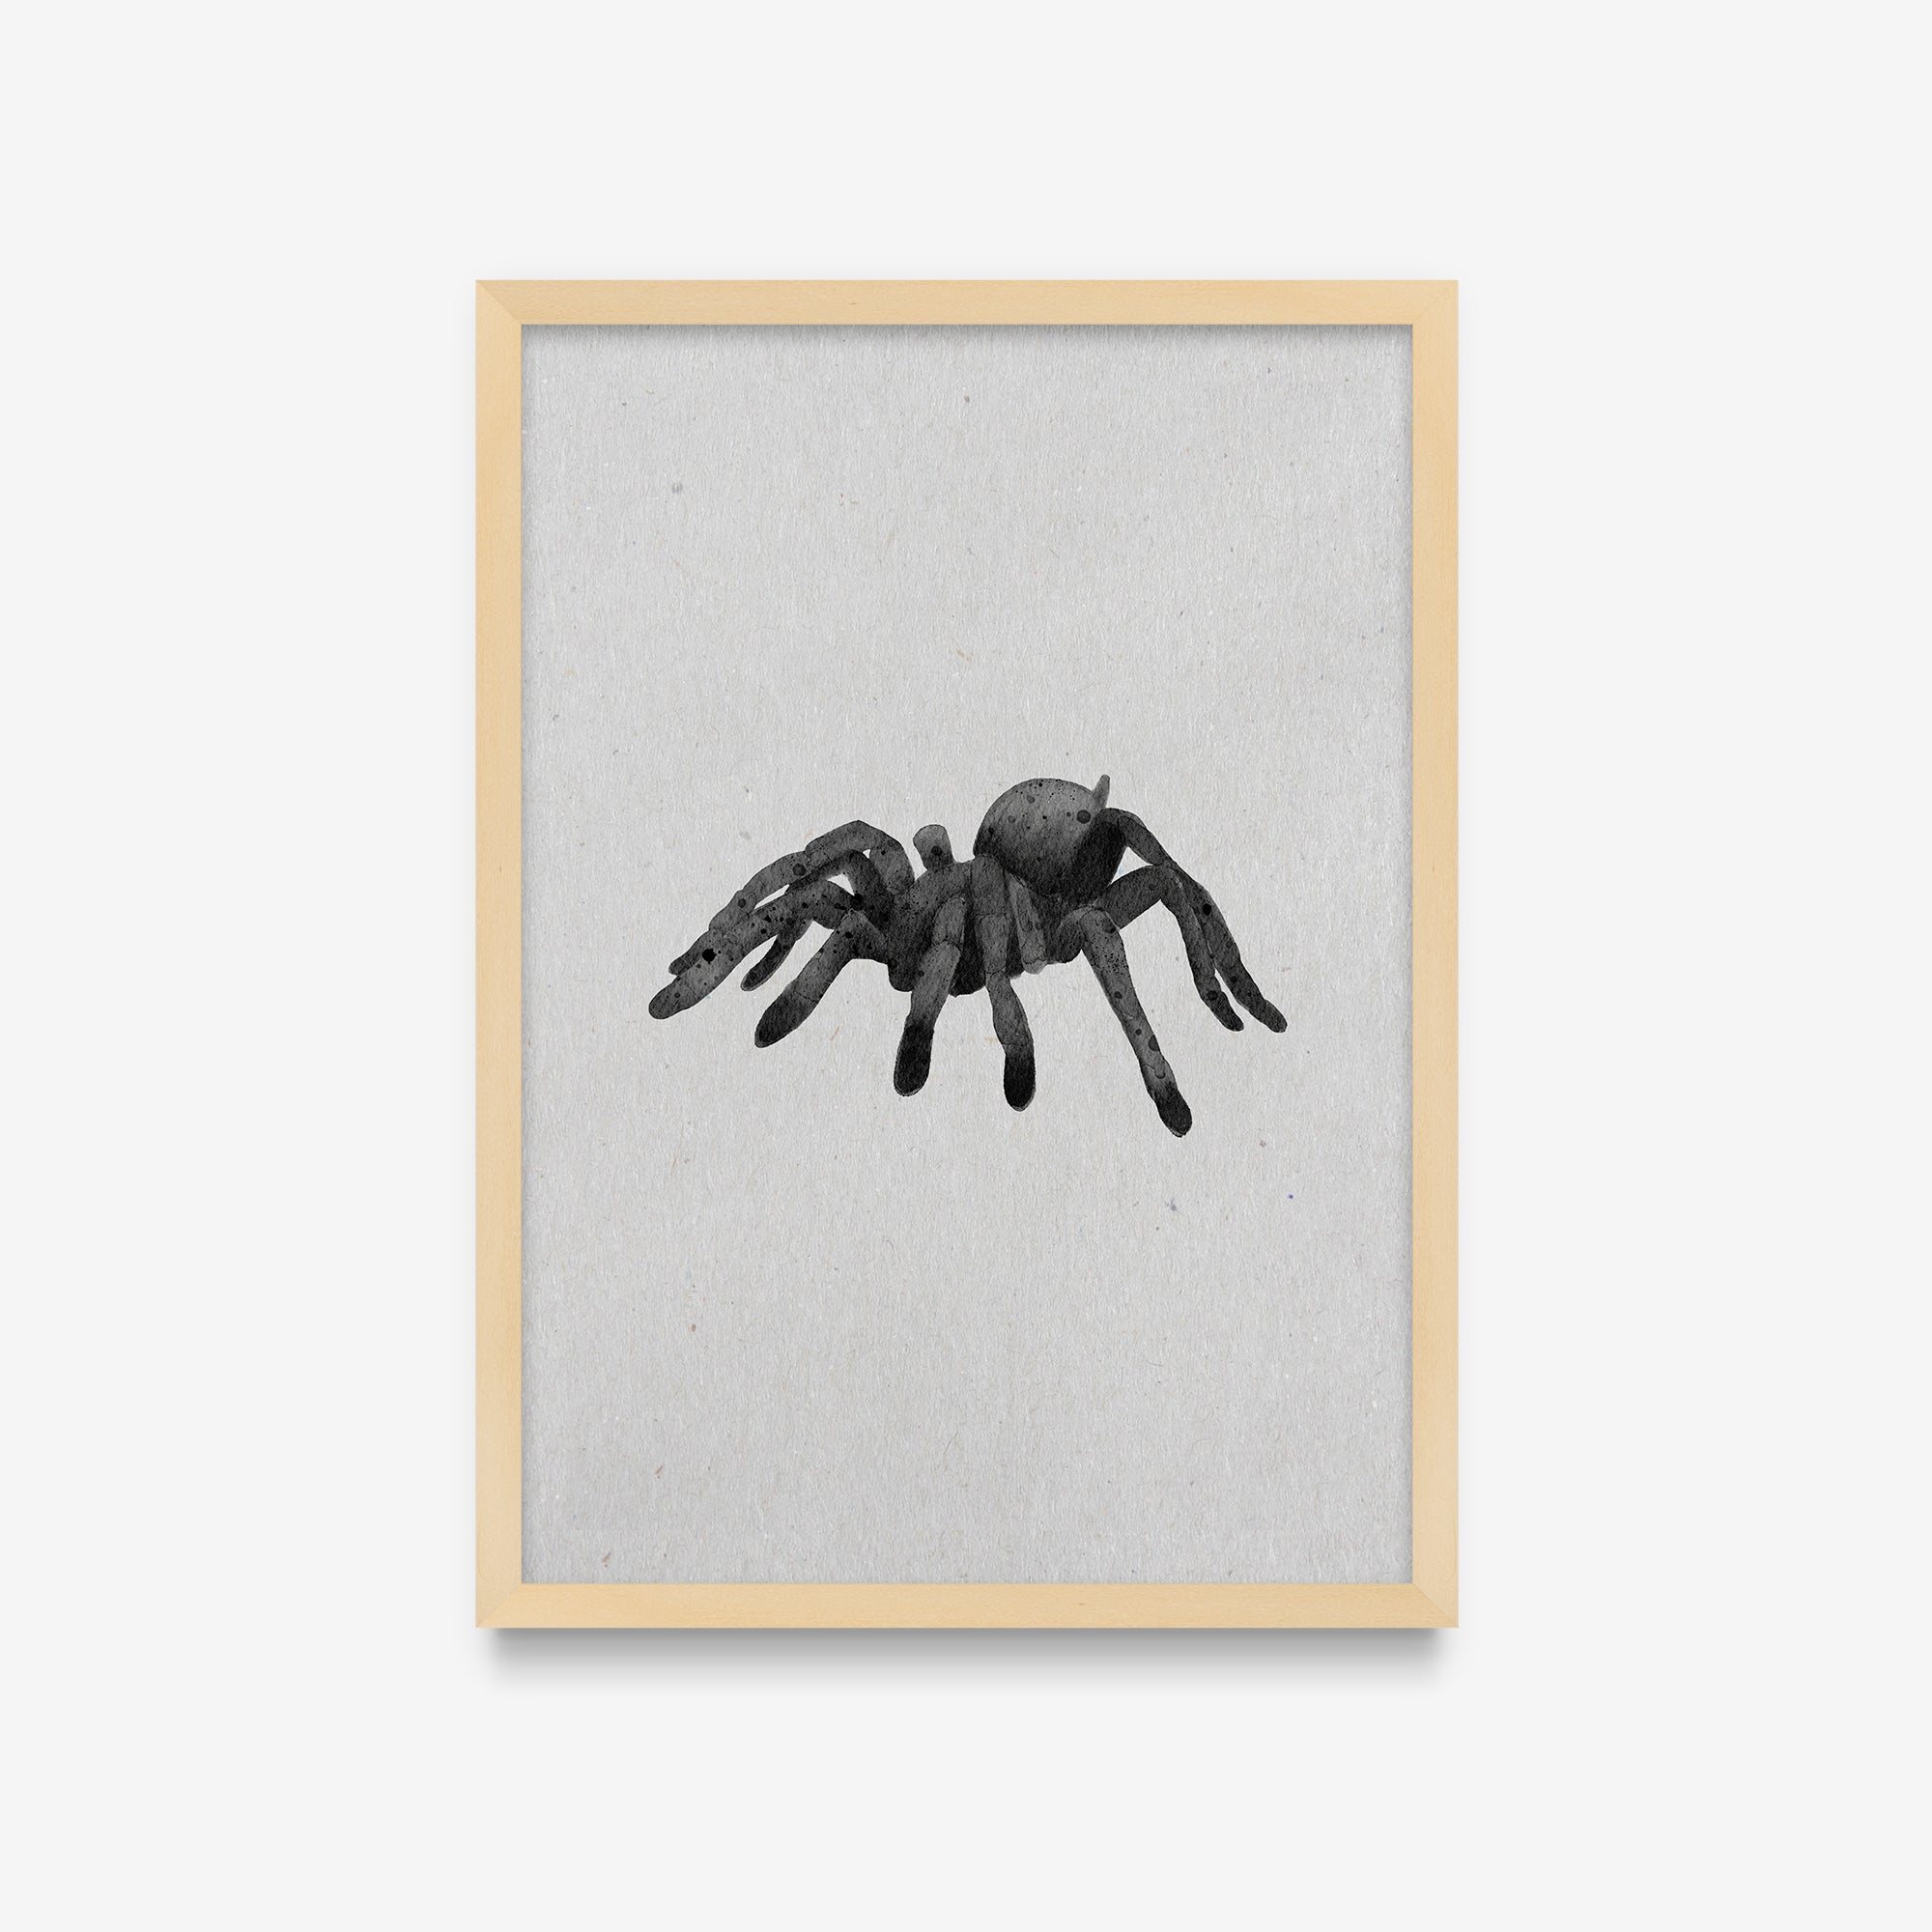 Spirit Animals - Spider